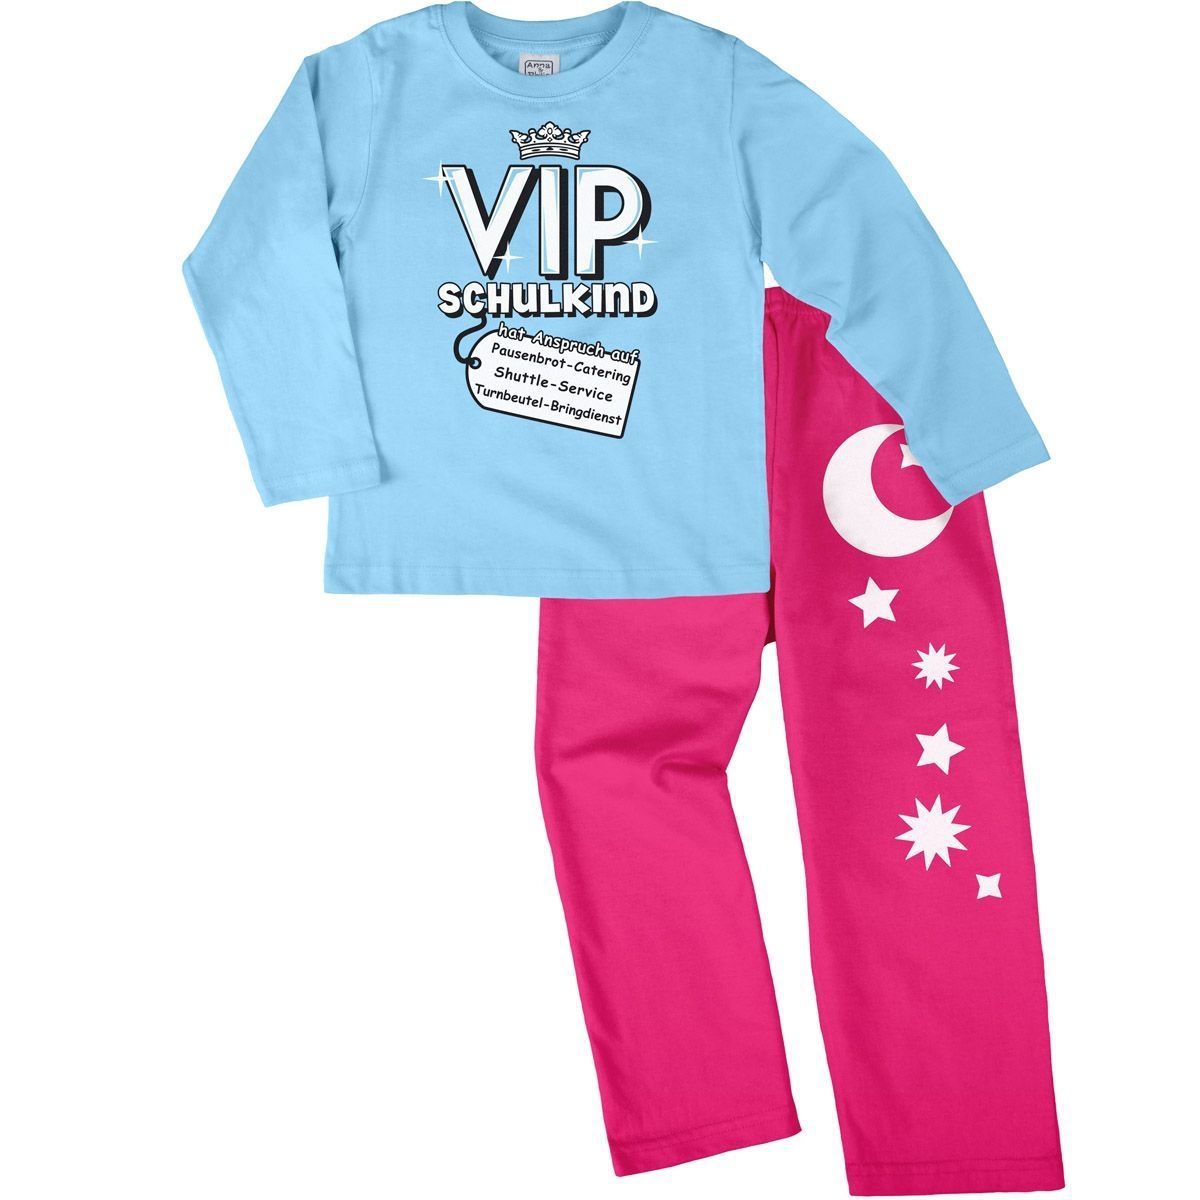 VIP Schulkind Pyjama Set hellblau / pink 122 / 128